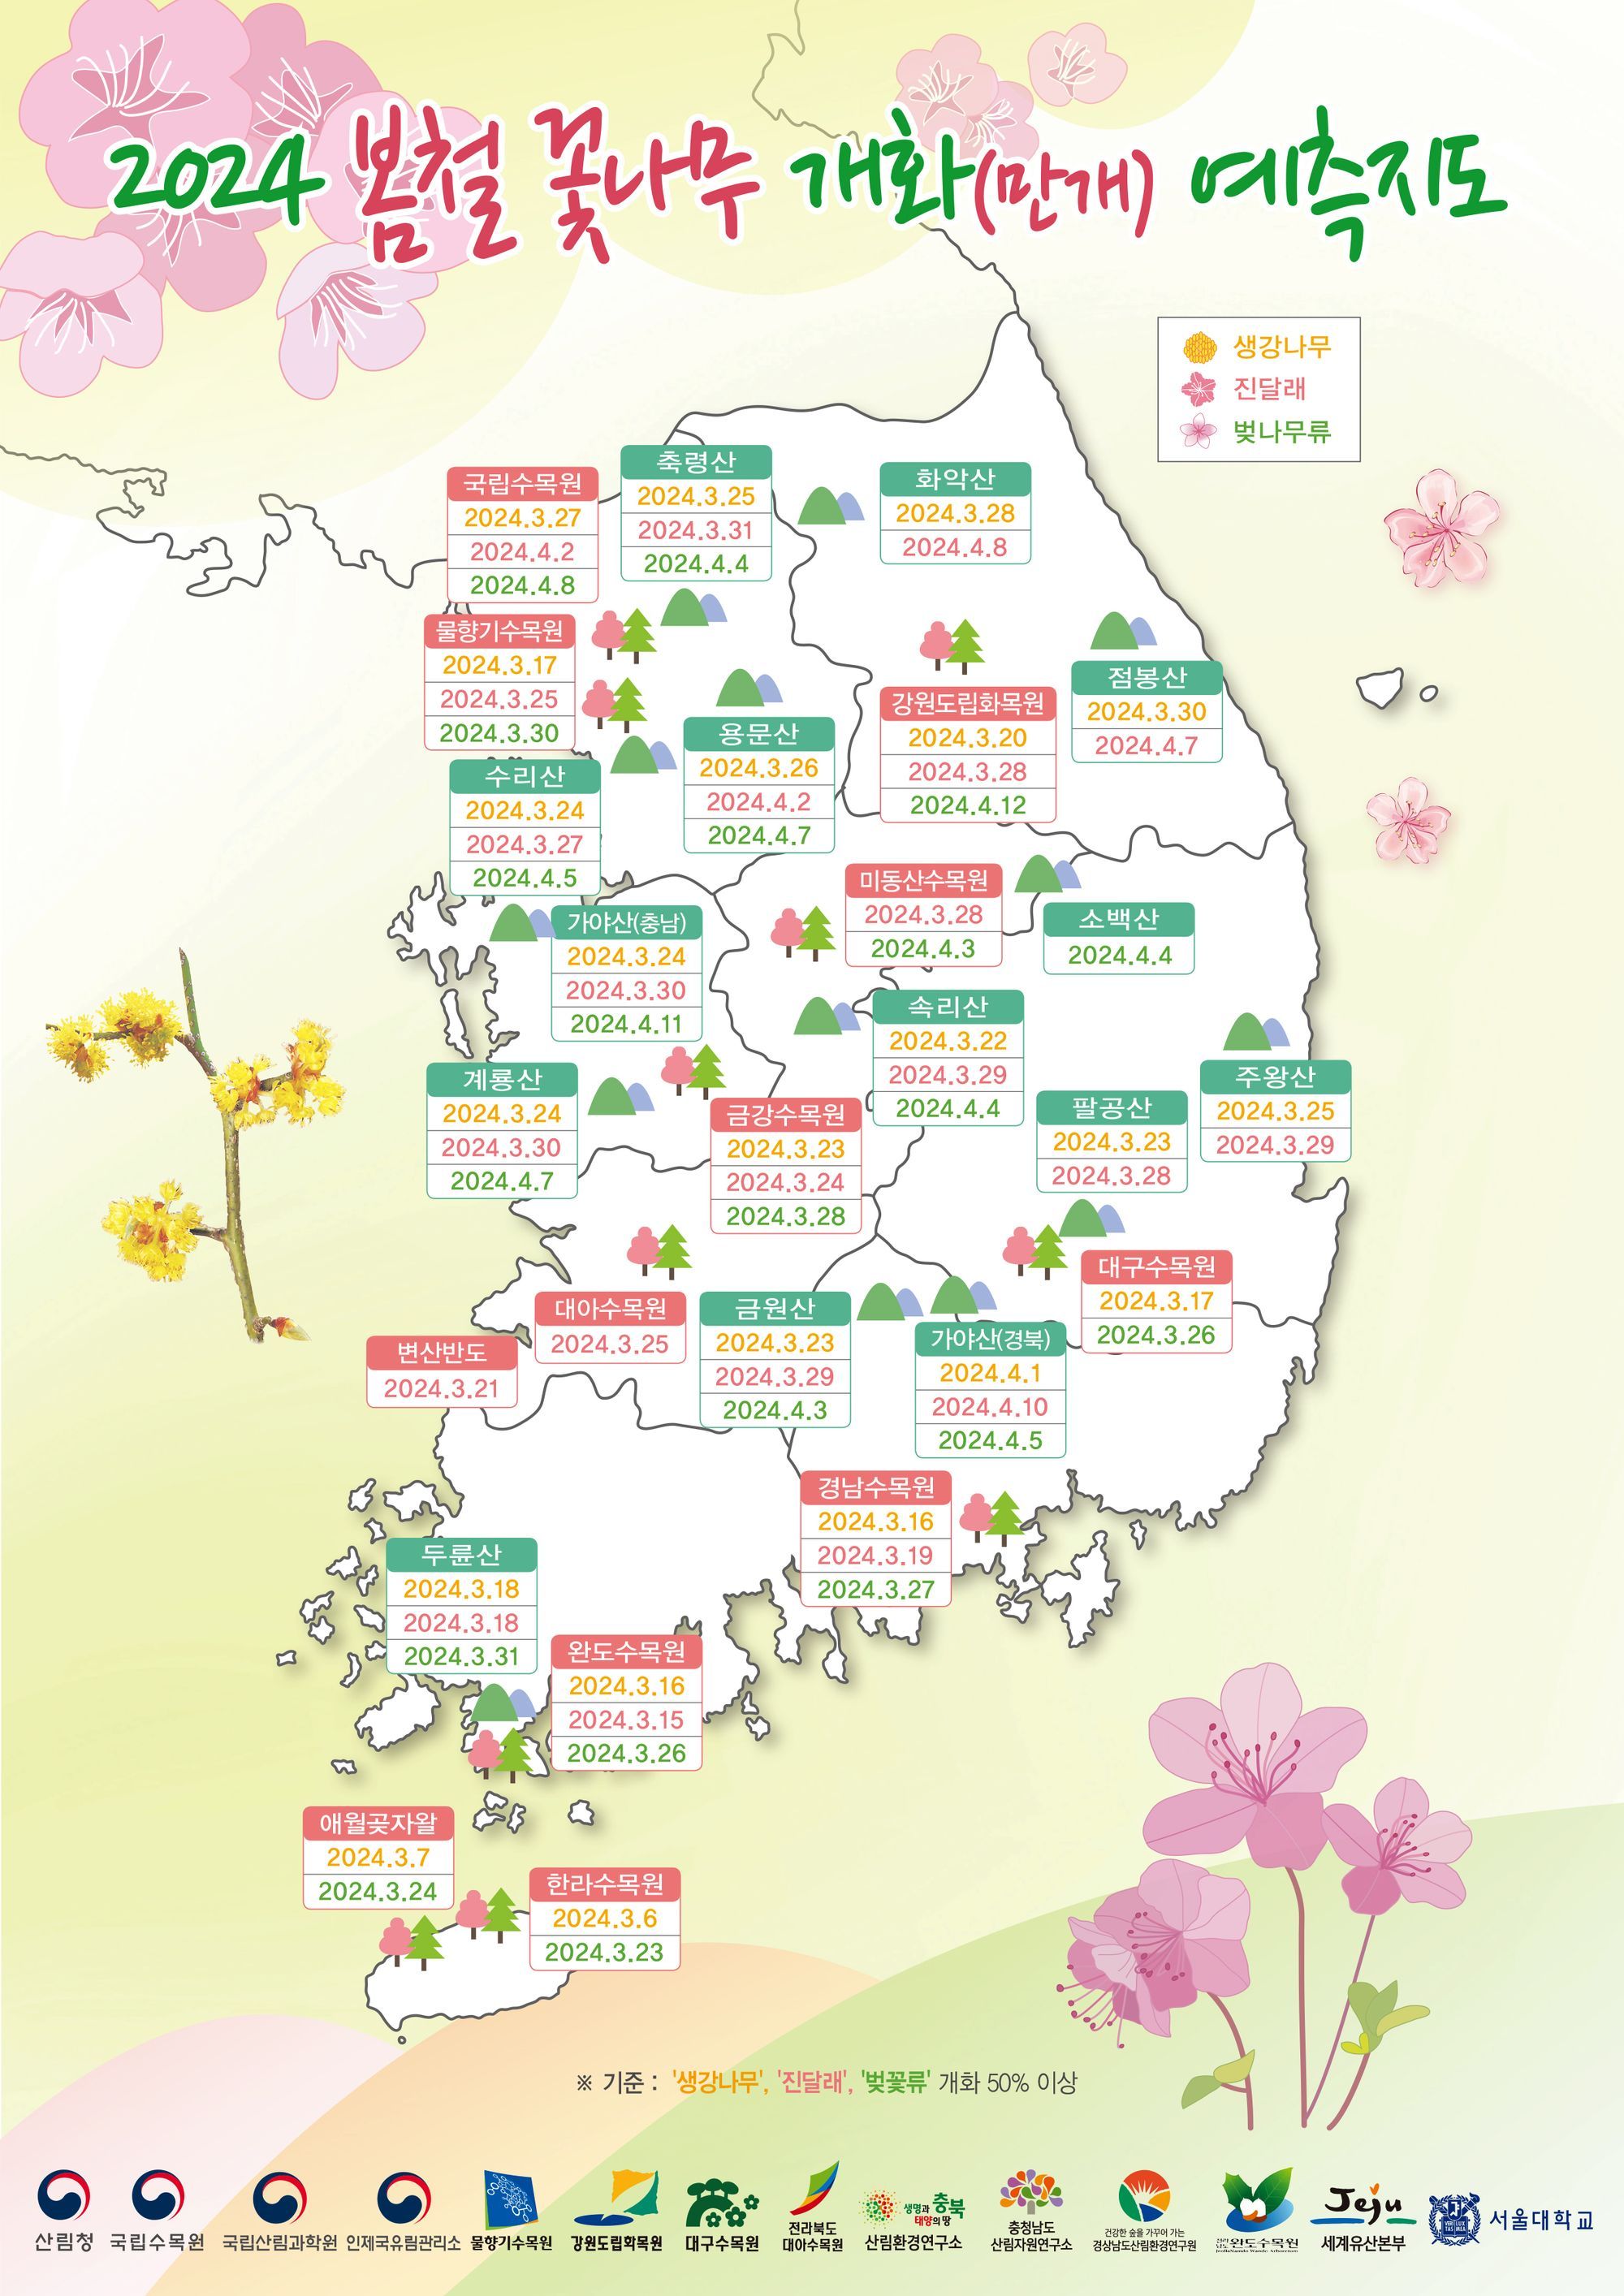 이번 봄에도 봄꽃 지도가 도착했어요! 🗺️